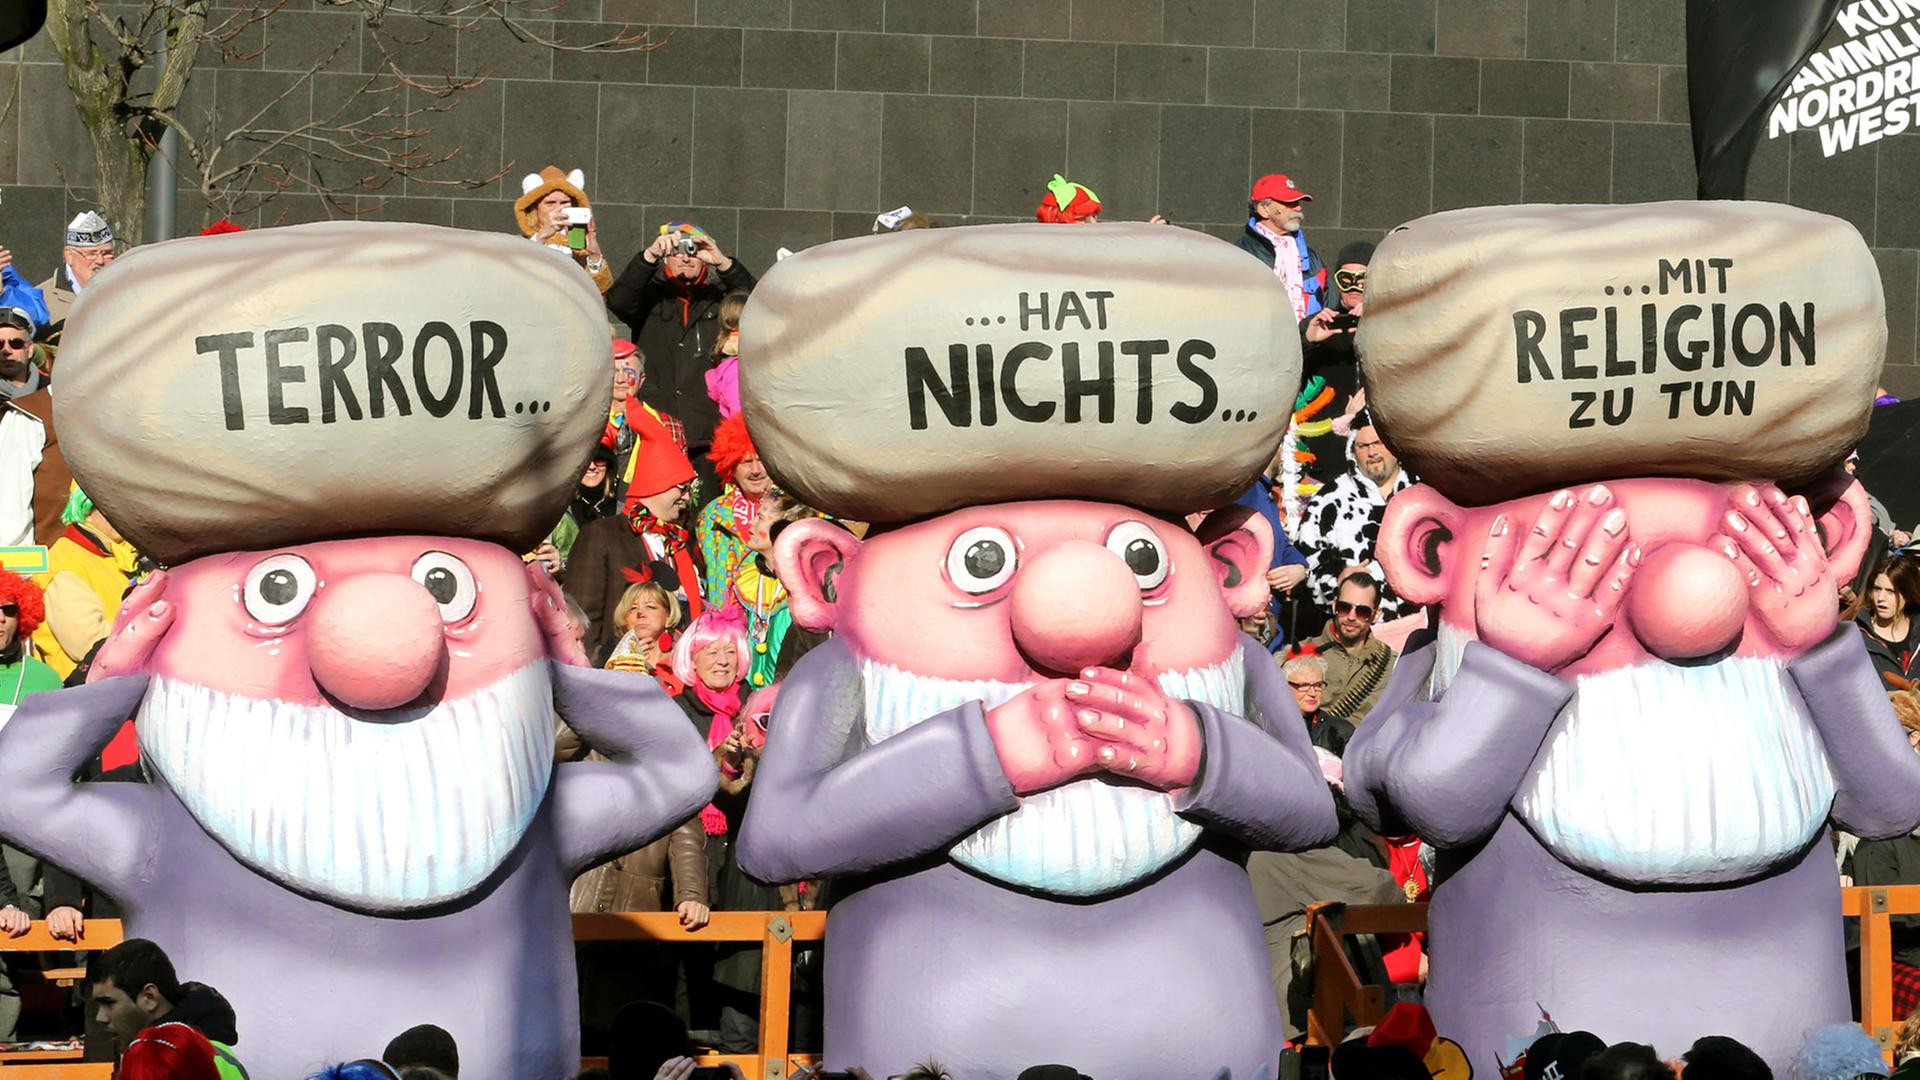 Ein Karnevalswagen beim Rosenmontaqgszug in Düsseldorf zeigt das Motiv "Terror hat nichts mit Religion zu tun".